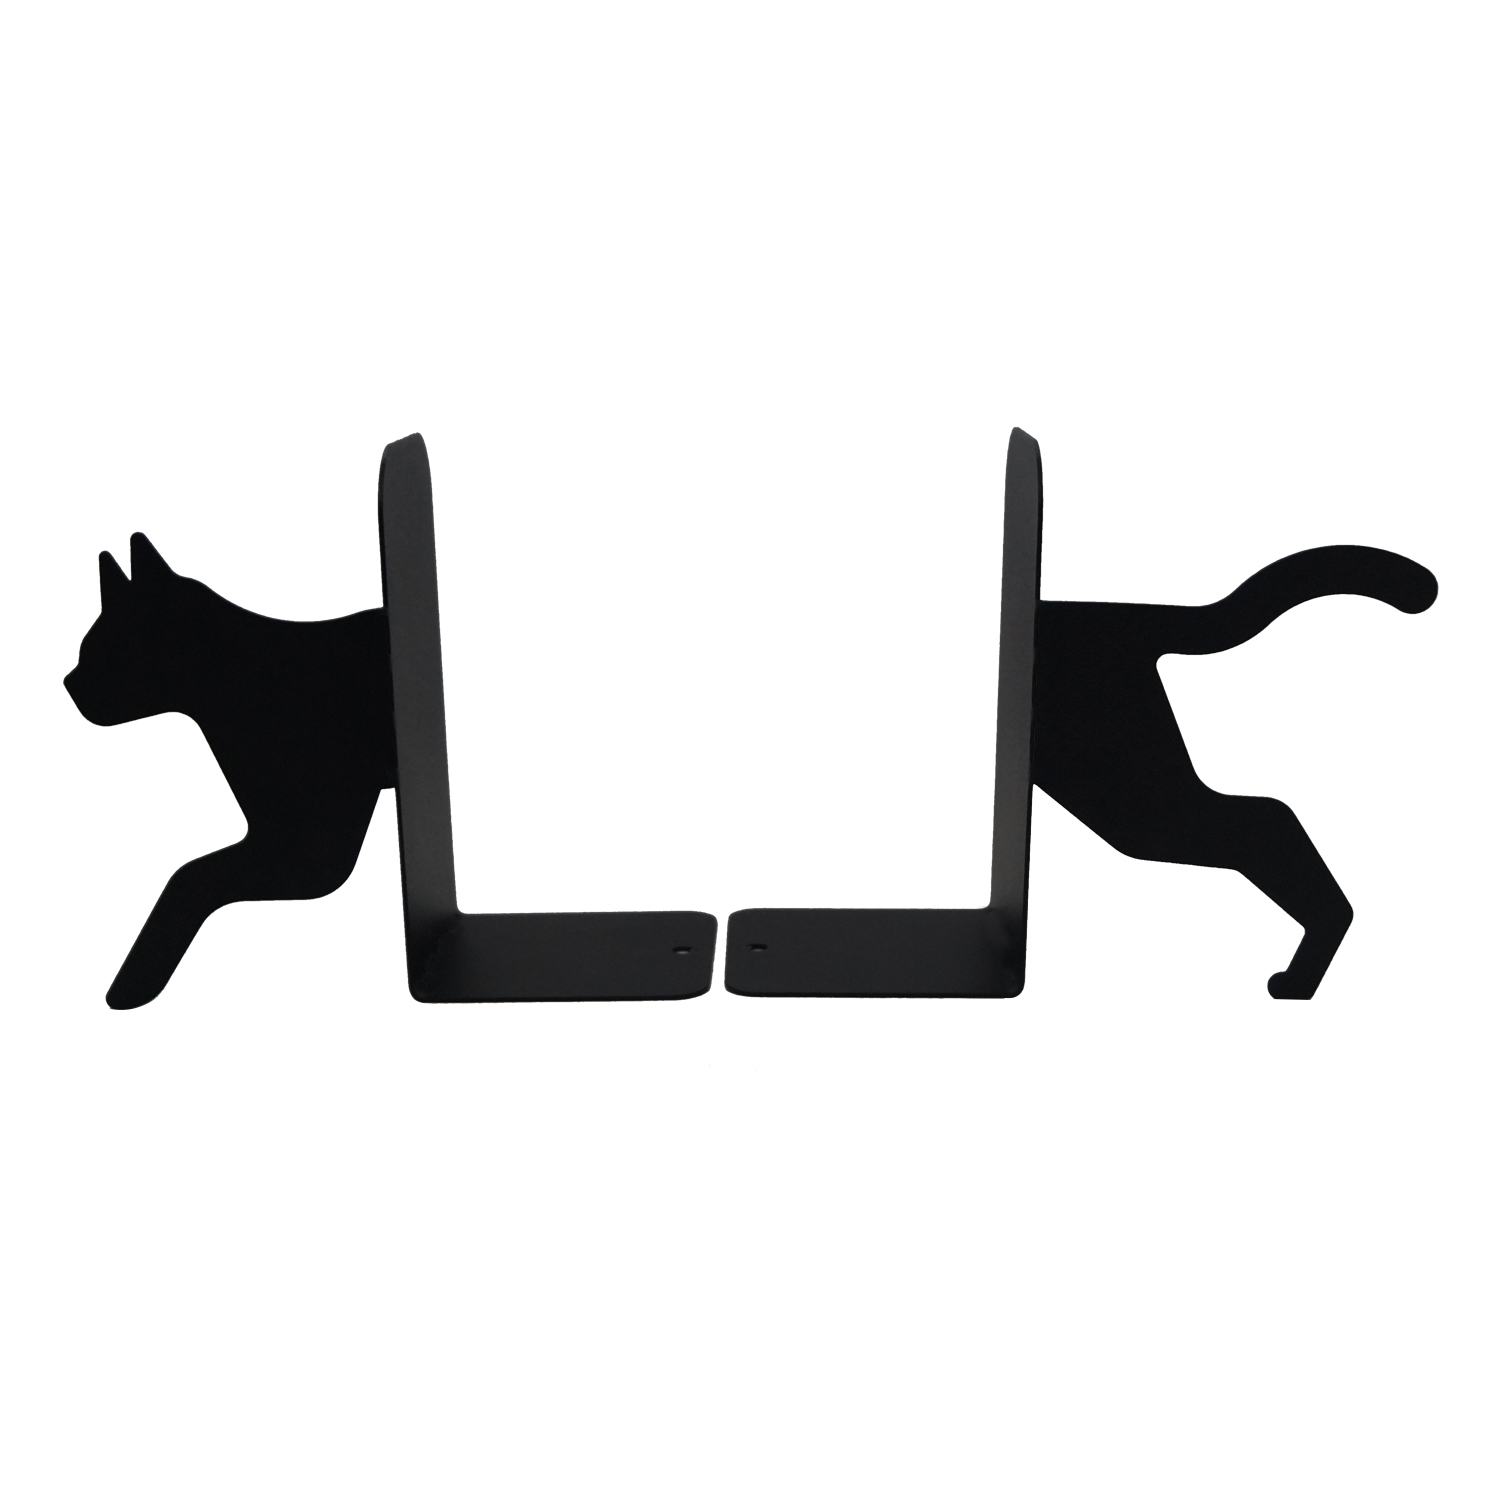 Sujetalibros - gato, color negro - Decora con metal